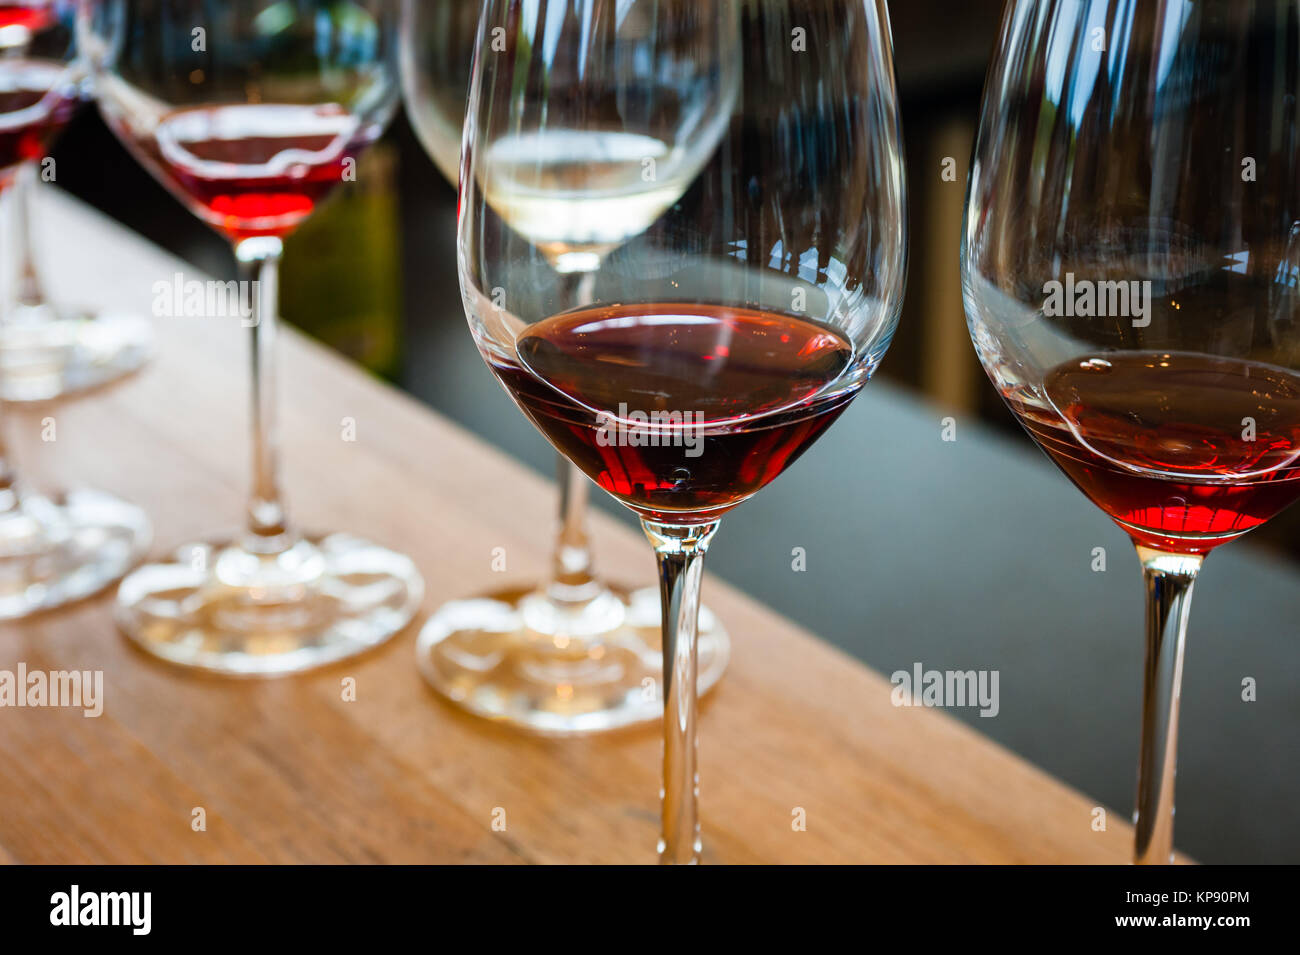 Détail de verres à vin avec vin rouge sur en bois Banque D'Images